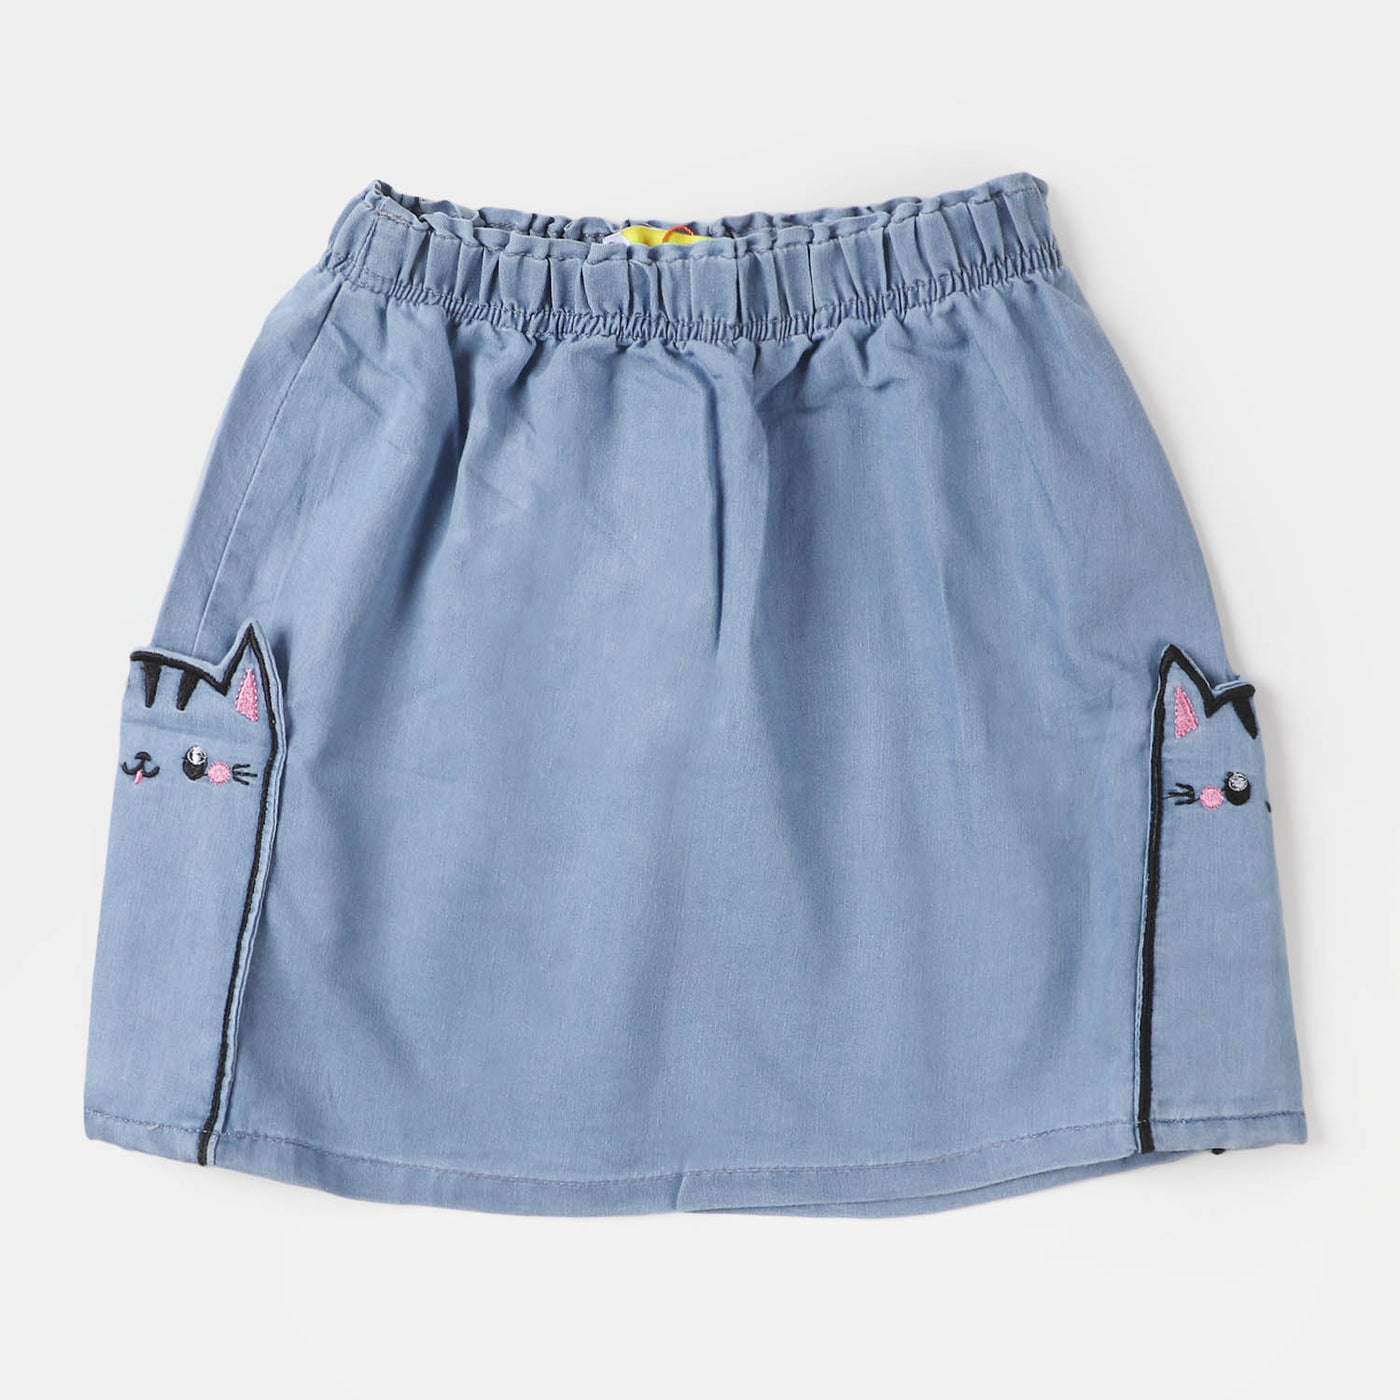 Infant Girls Denim Skirt Bunny - Mid Blue